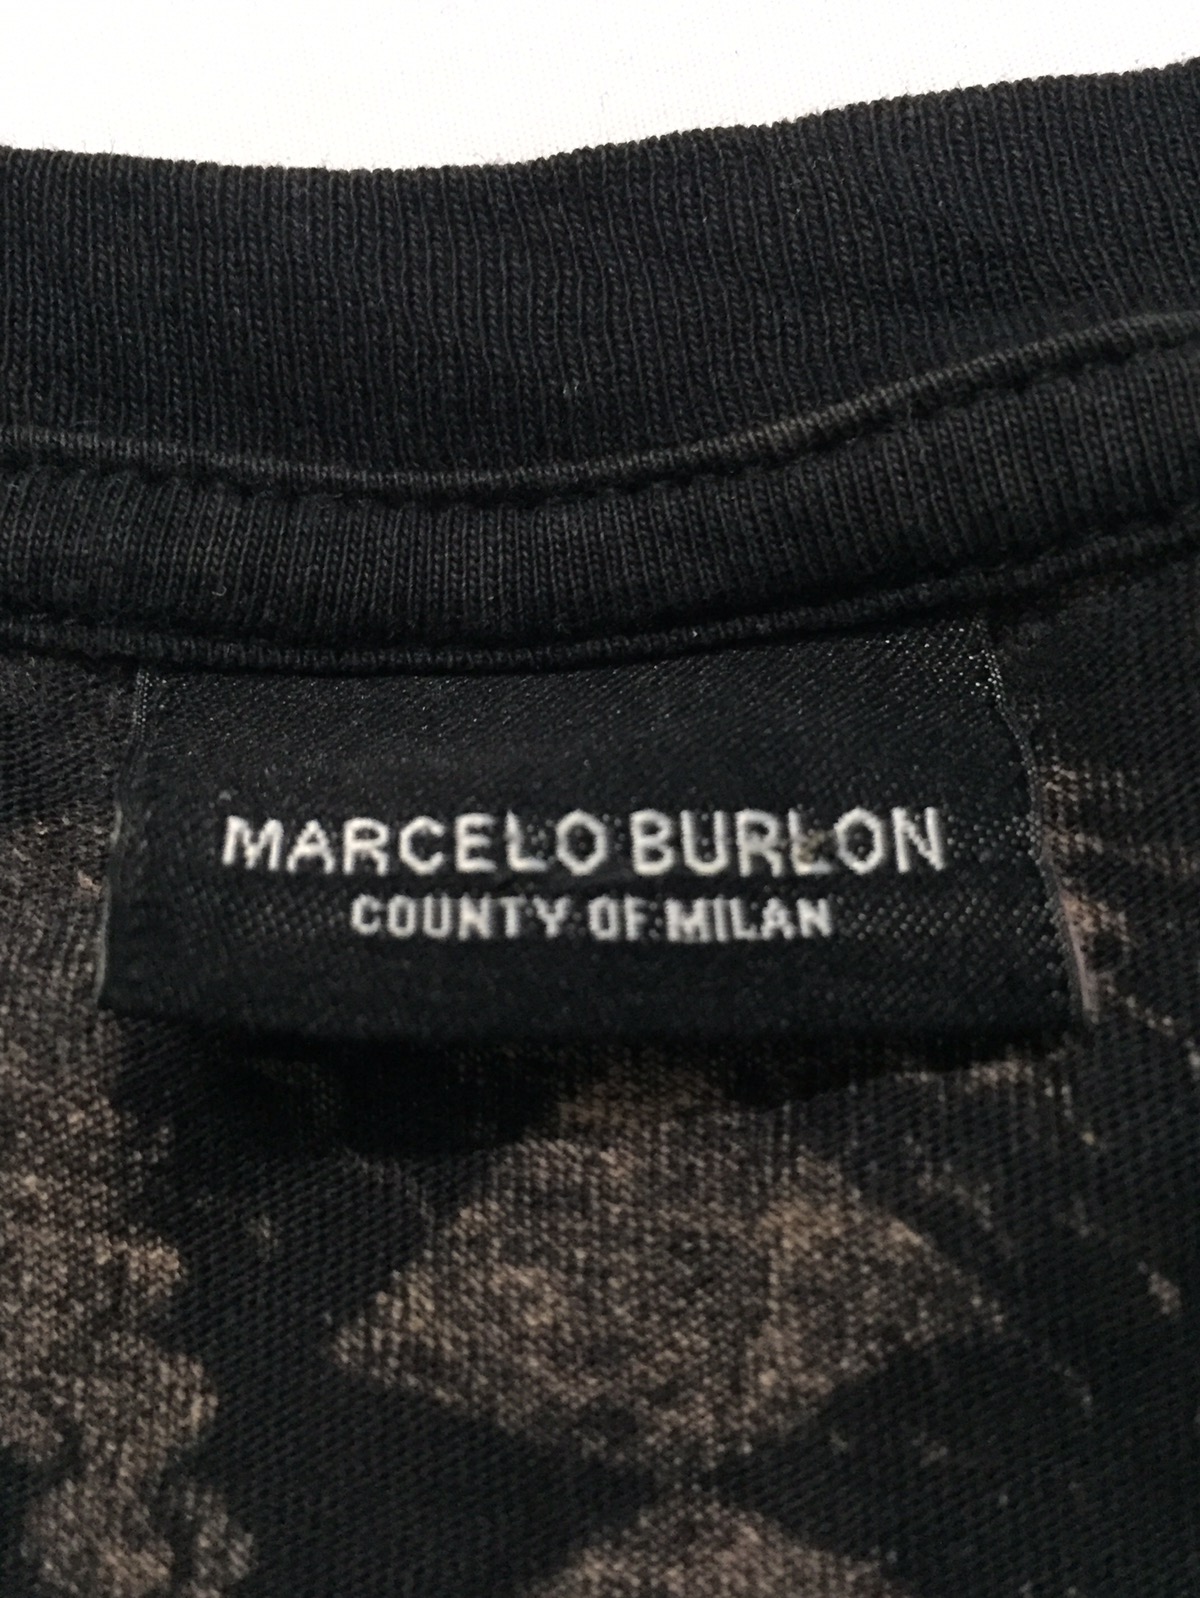 MARCELO BURLON SNAKE 🐍 RARE DESIGN SHIRT - 5